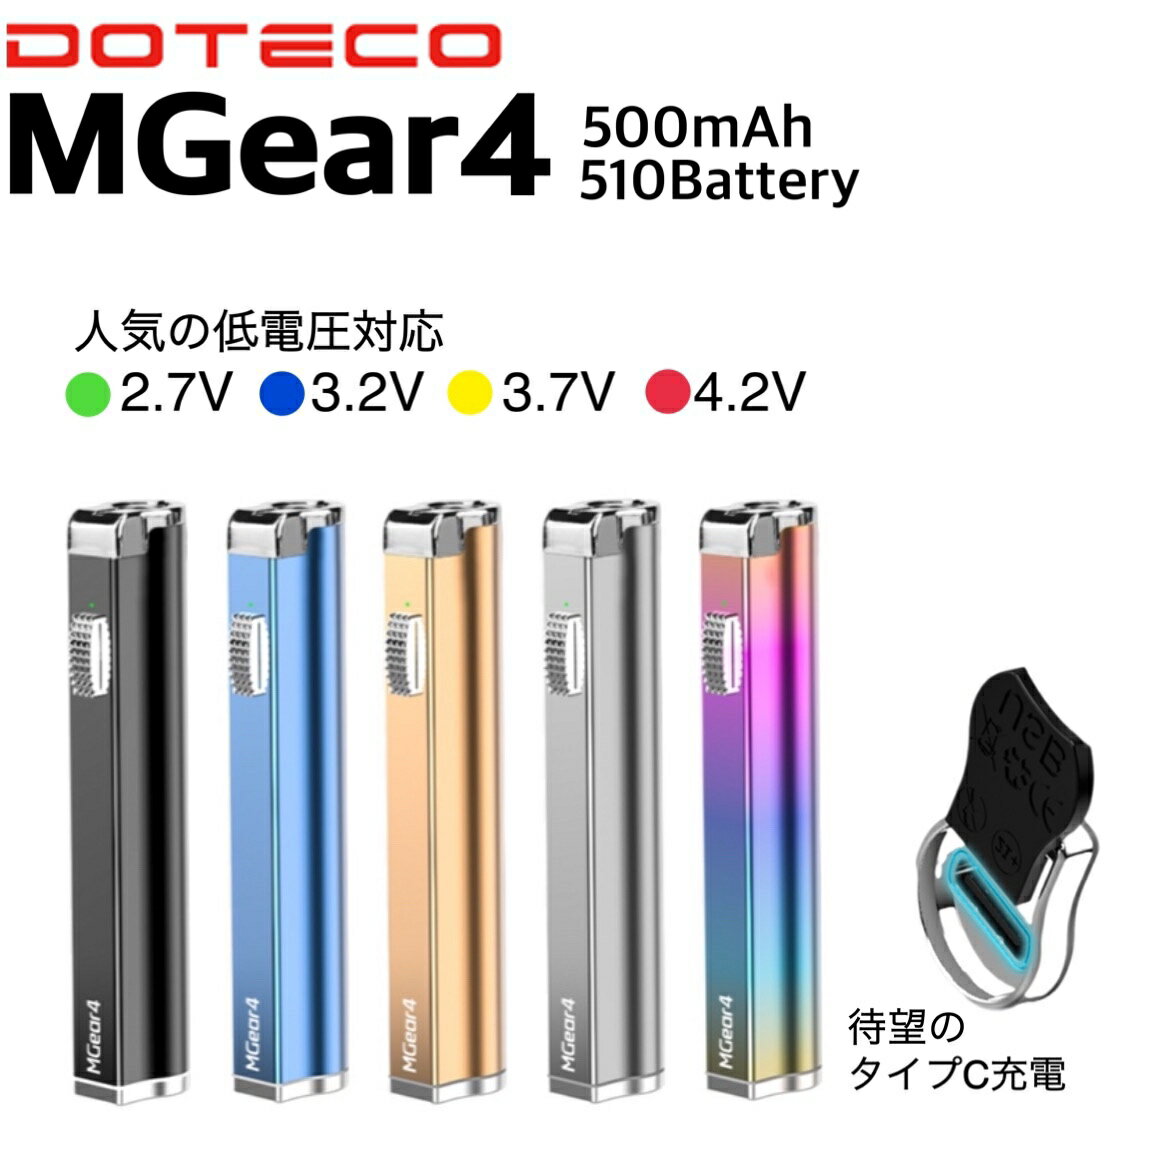 【送料無料】DOTECO ドテコ MGear4 vaporizer battery ヴェポライザー バッテリー 500mAh 510規格対応 Type-c